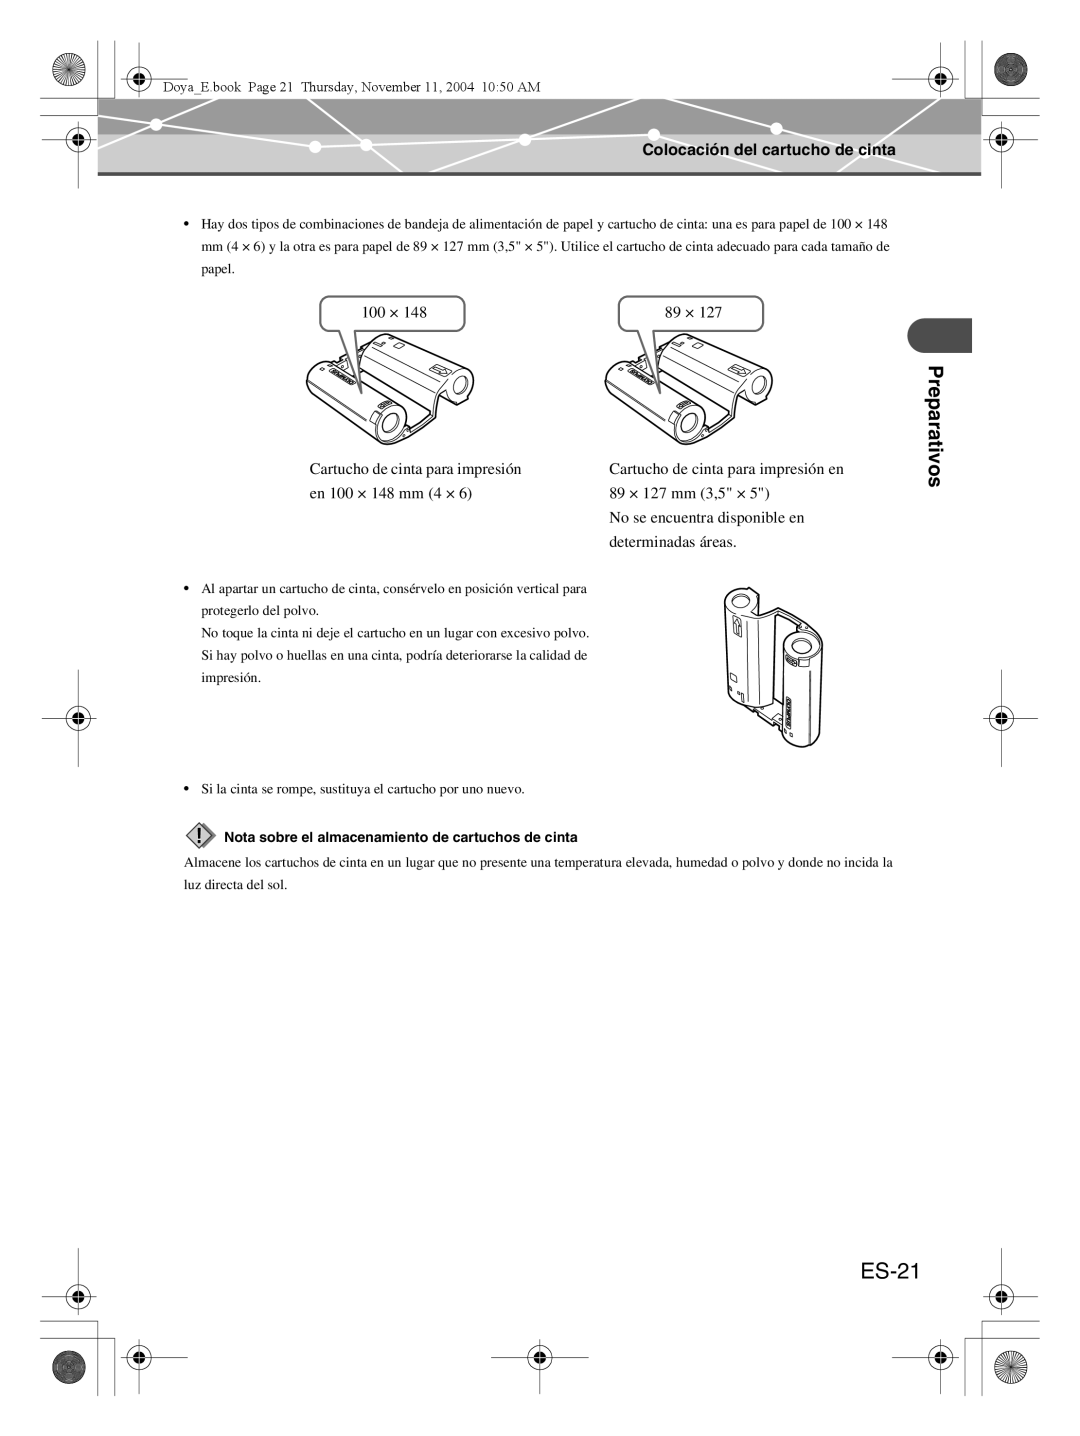 Olympus P-S100 user manual ES-21, Preparativos, Colocación del cartucho de cinta, 100 × 